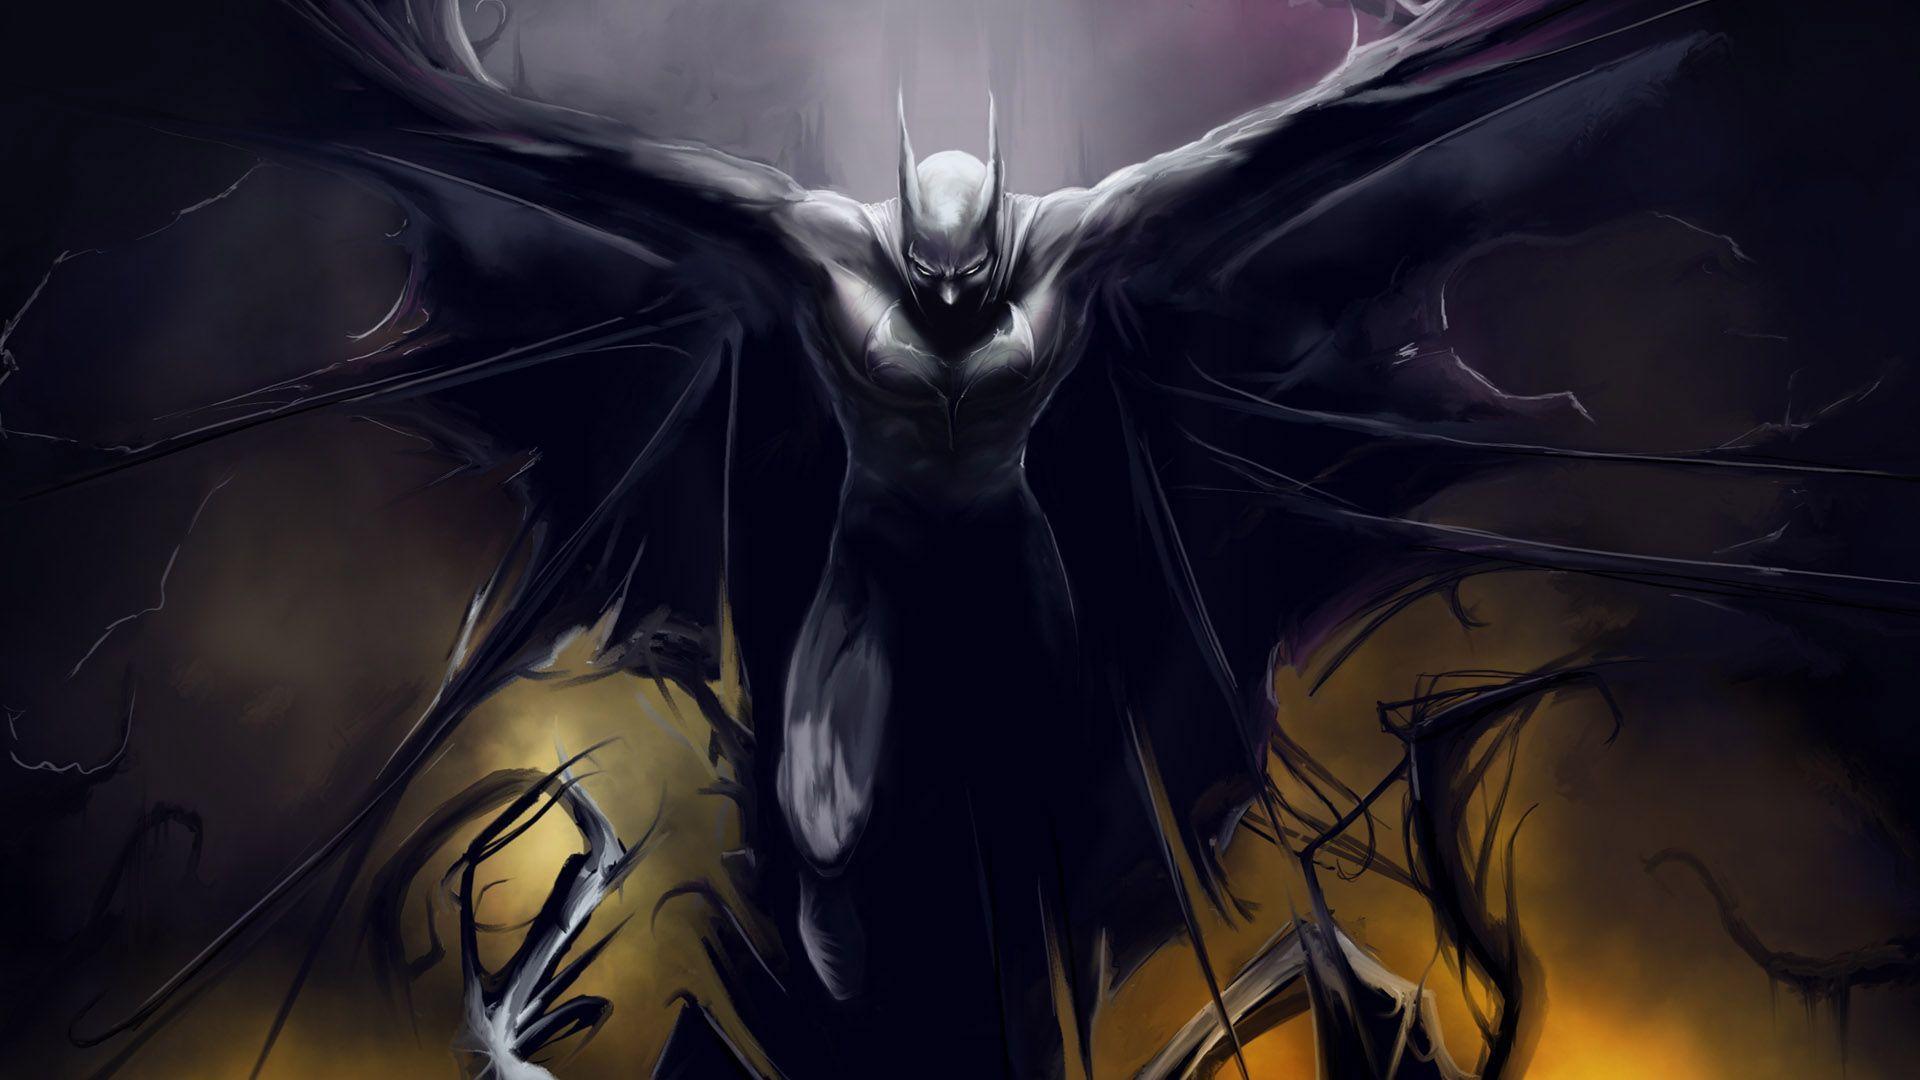 Monster Demon Anime Wallpaper. Batman artwork, Batman comic wallpaper, Batman wallpaper